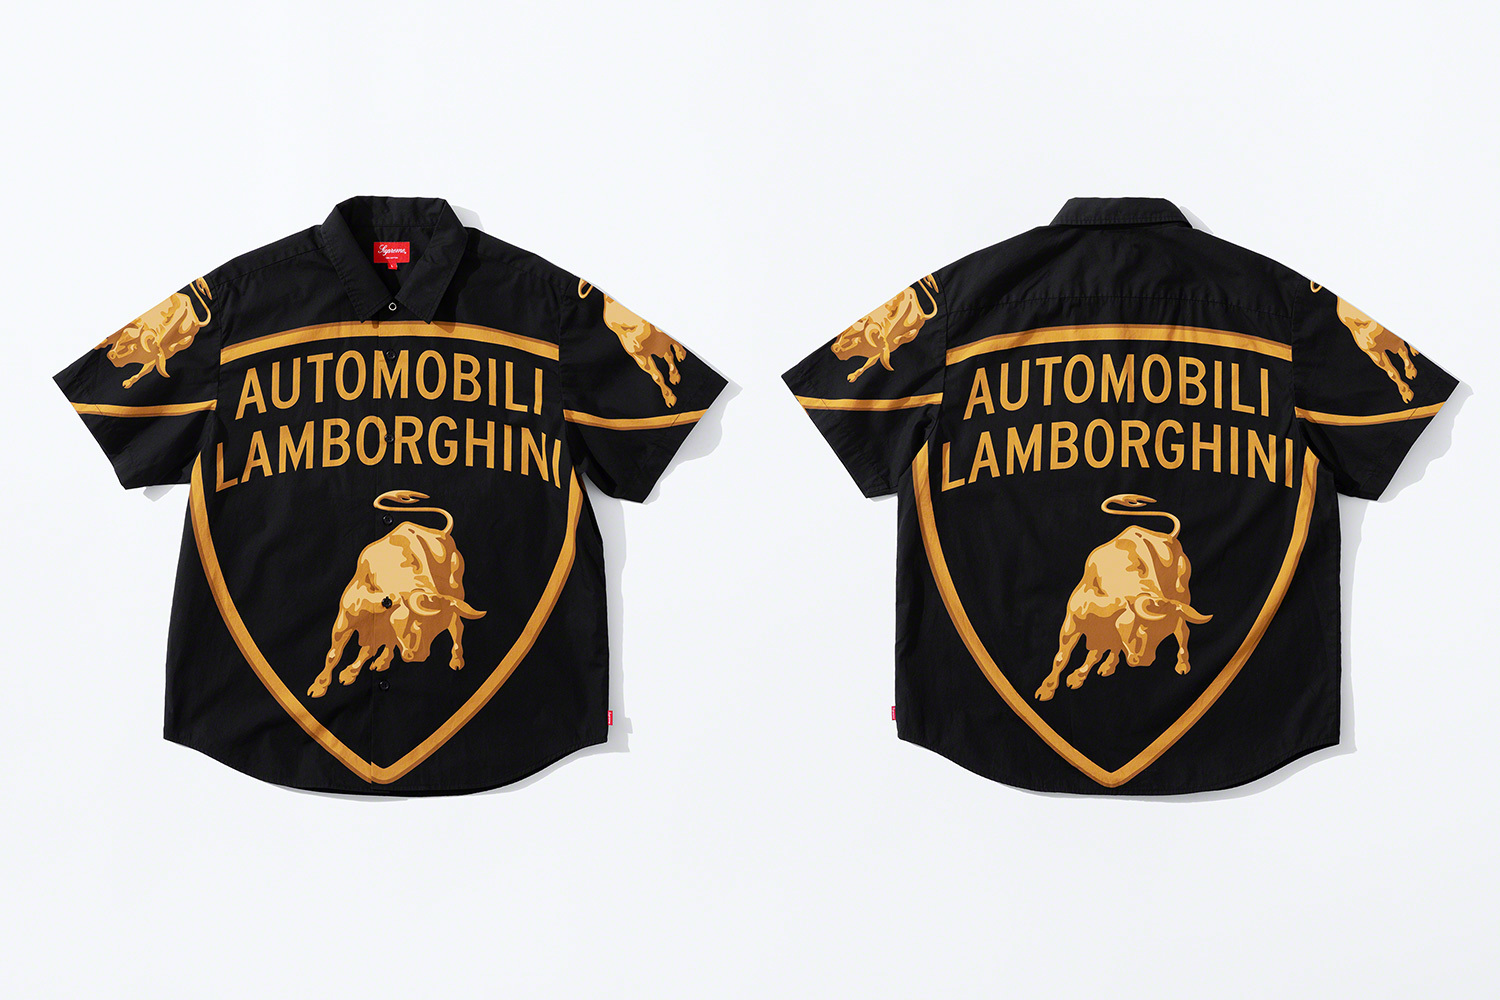 Hype Driving: Supreme®X Automobili Lamborghini Collection Is Here